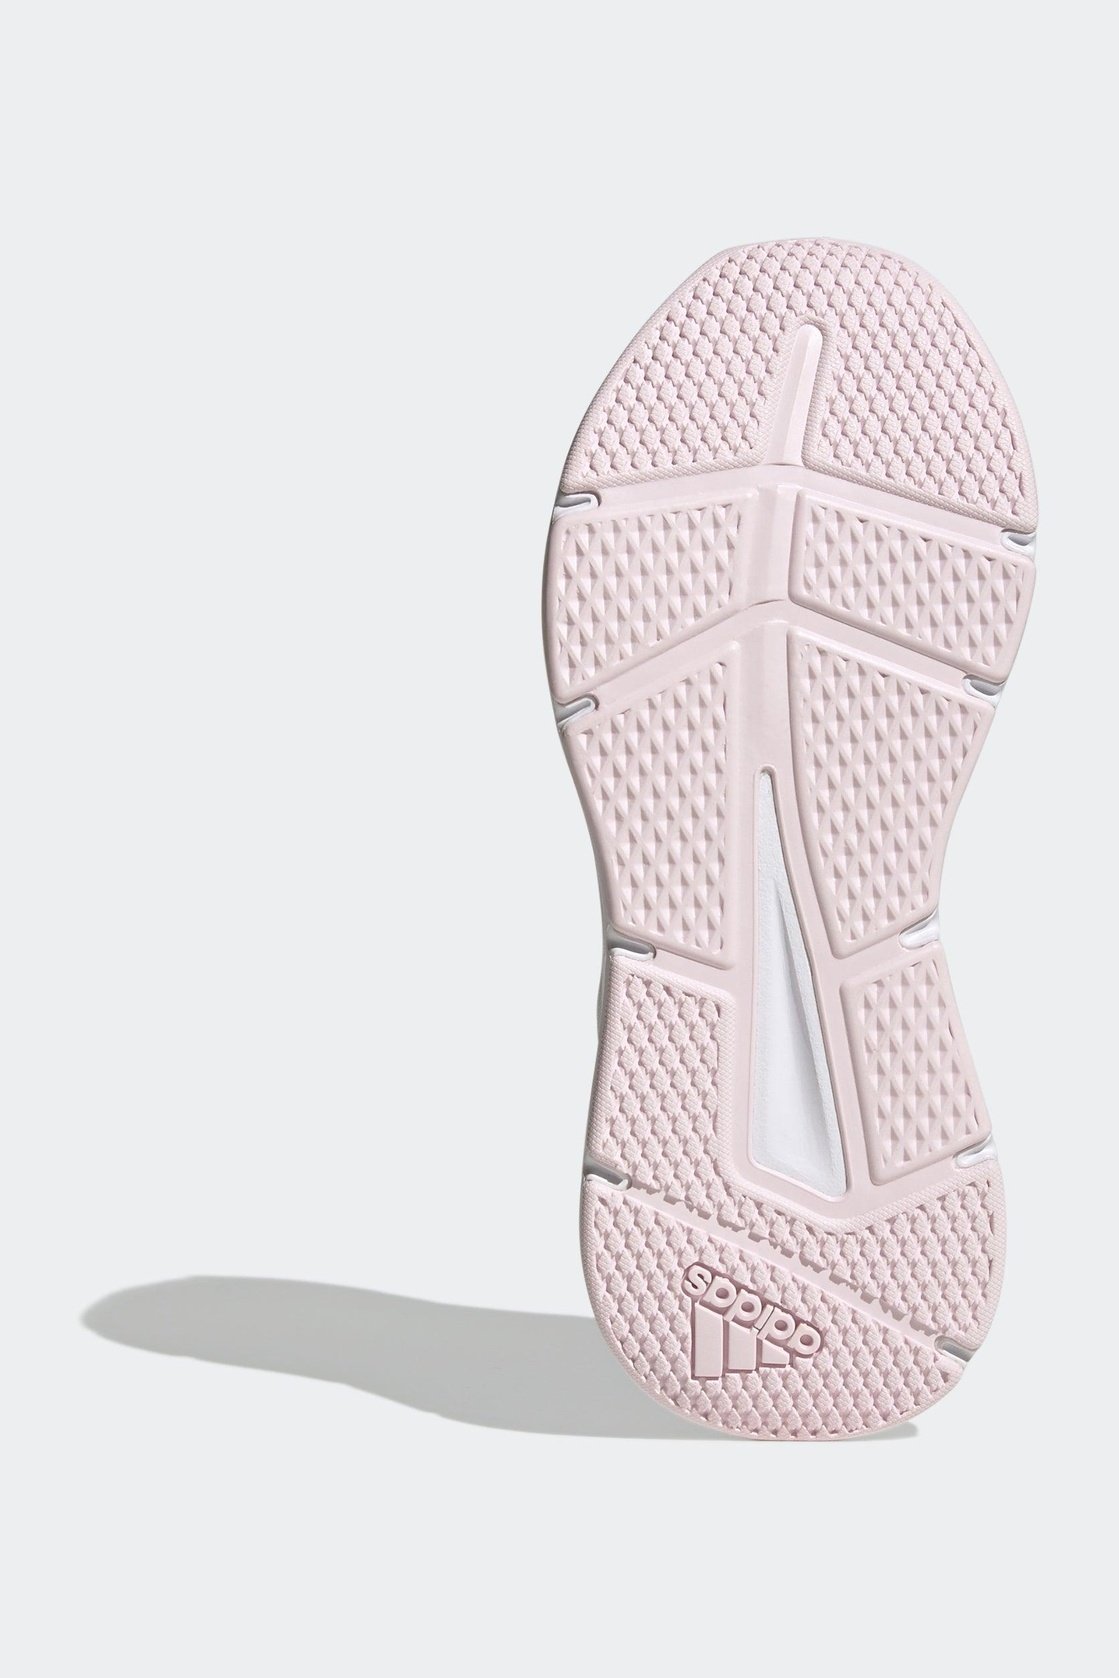 ADIDAS - נעלי ספורט לנשים GALAXY 6 בצבע שחור - MASHBIR//365